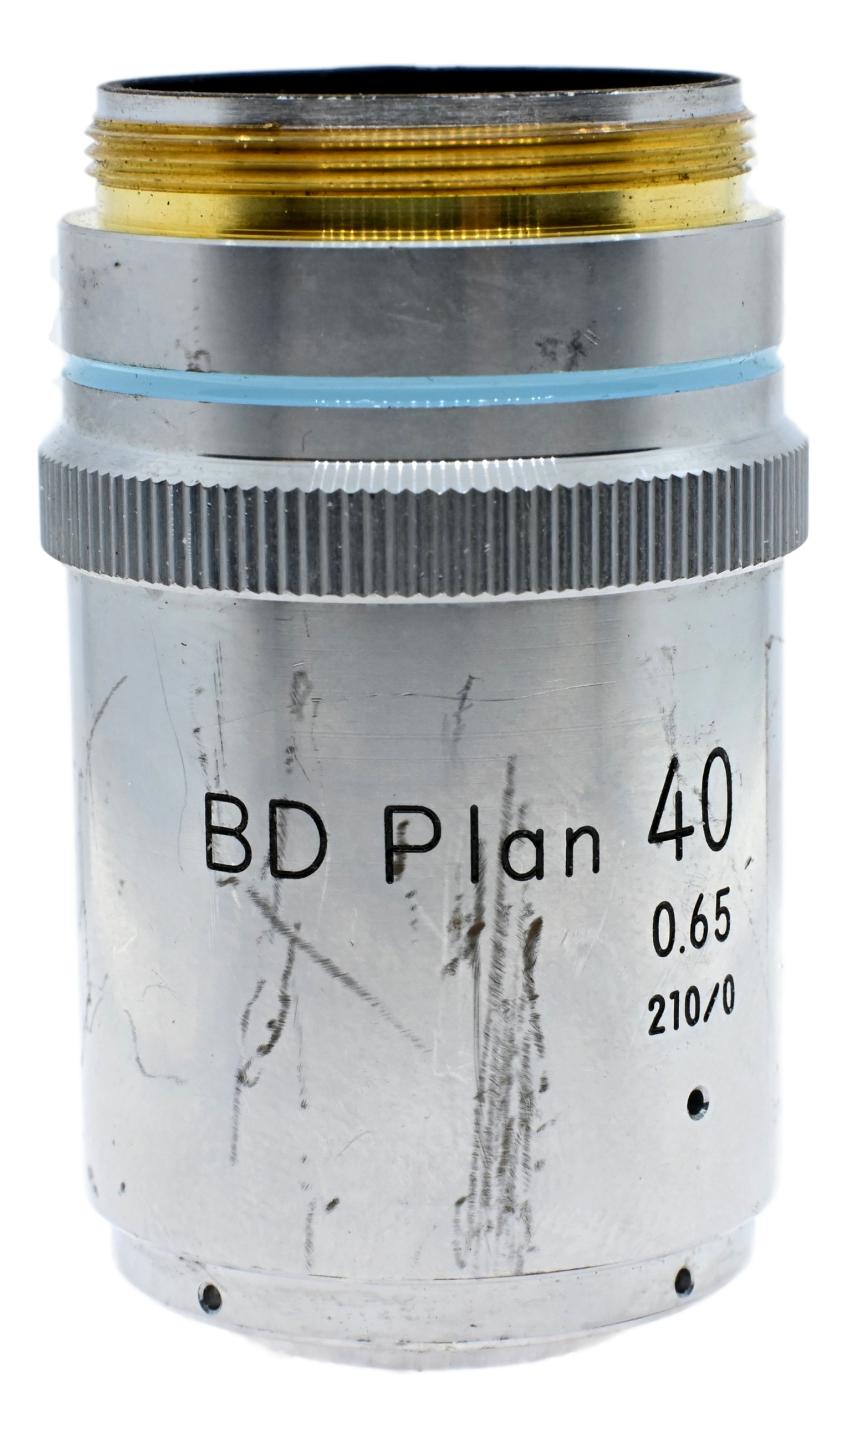 Nikon BD Plan 40x Objective